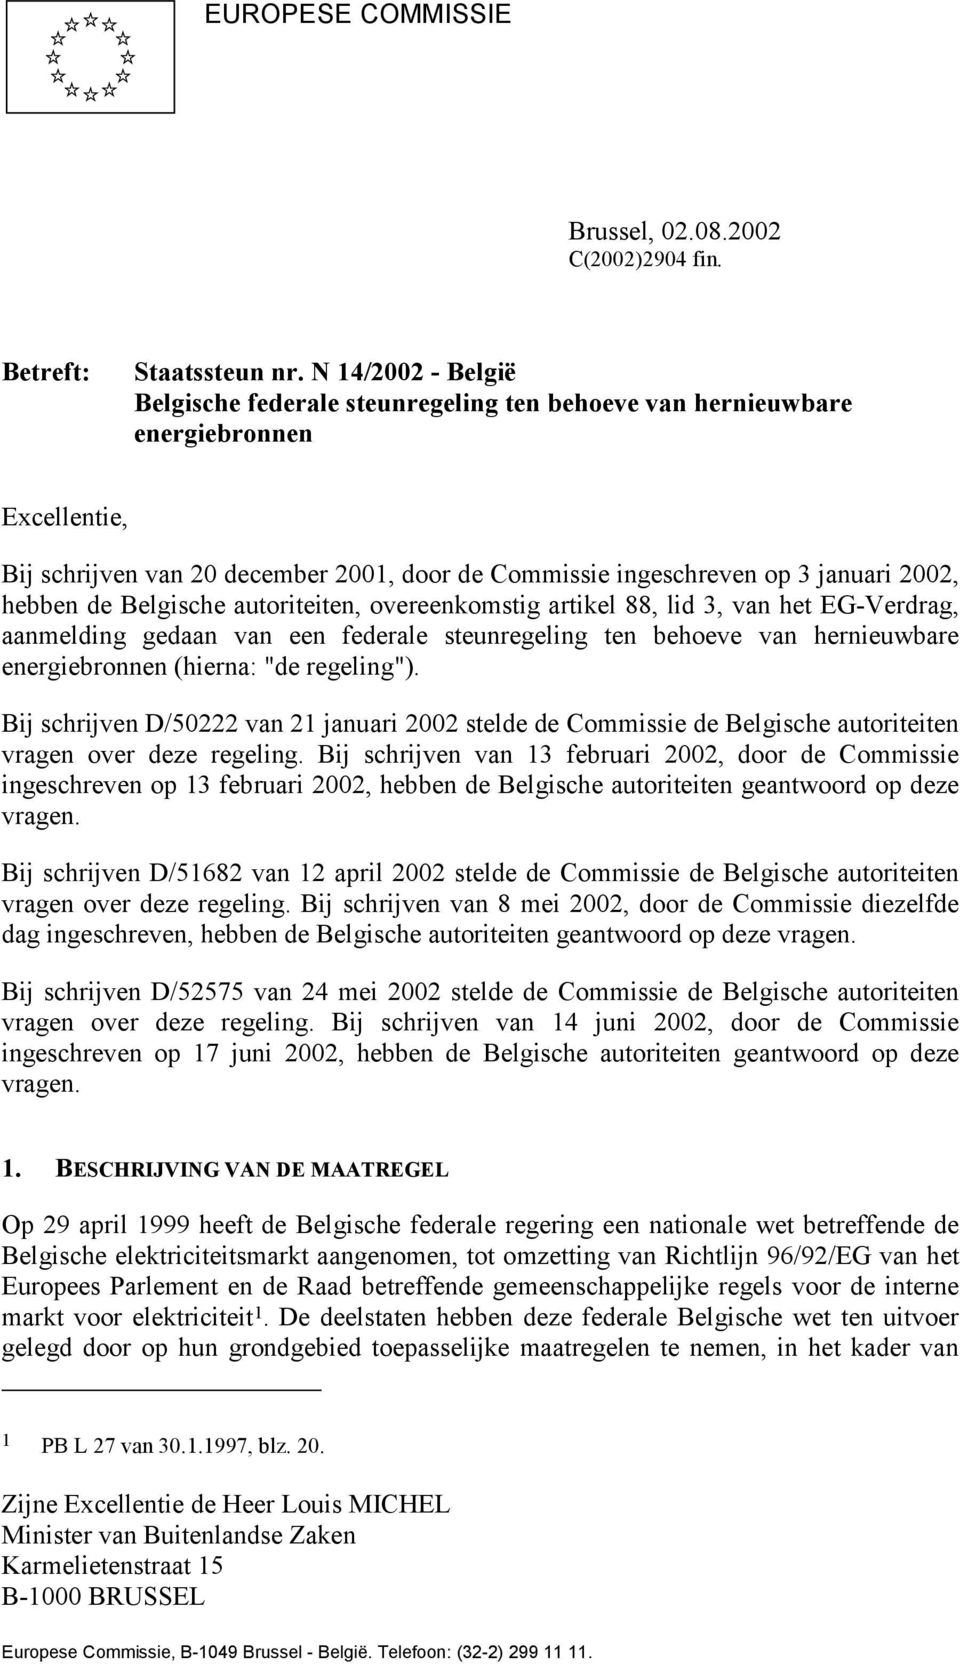 hebben de Belgische autoriteiten, overeenkomstig artikel 88, lid 3, van het EG-Verdrag, aanmelding gedaan van een federale steunregeling ten behoeve van hernieuwbare energiebronnen (hierna: "de